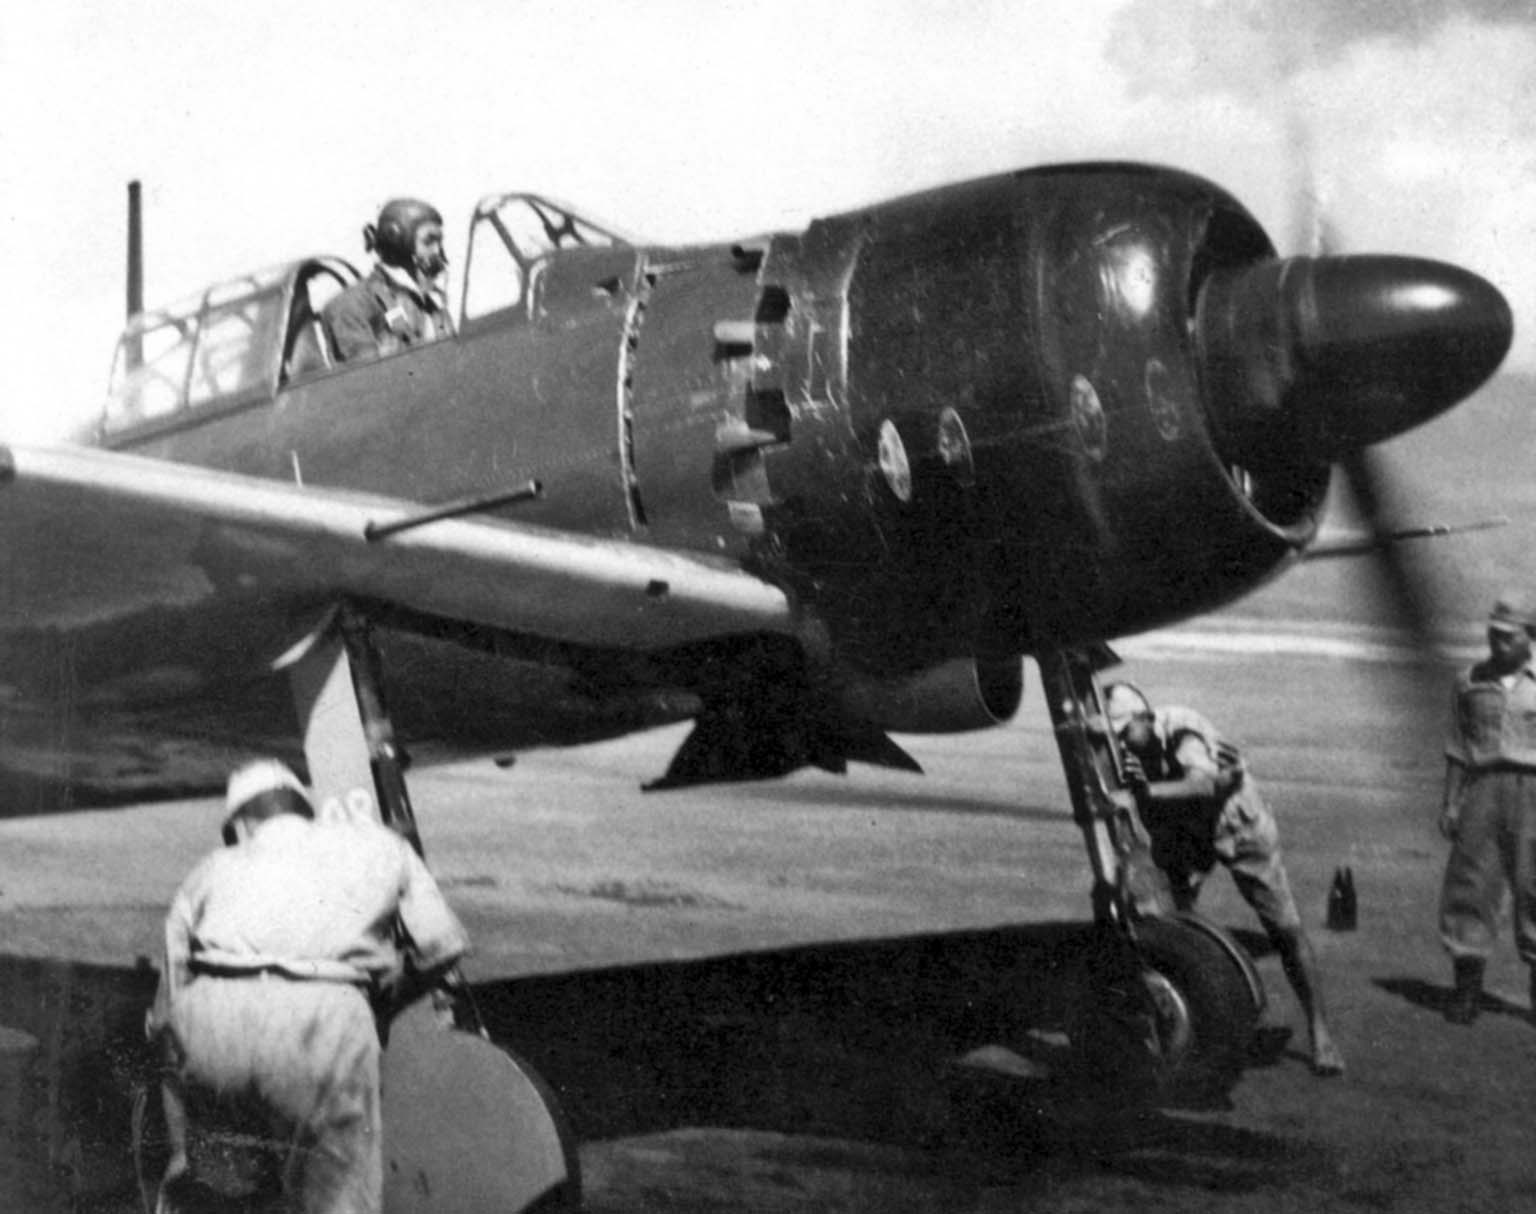 A6M5 Zero